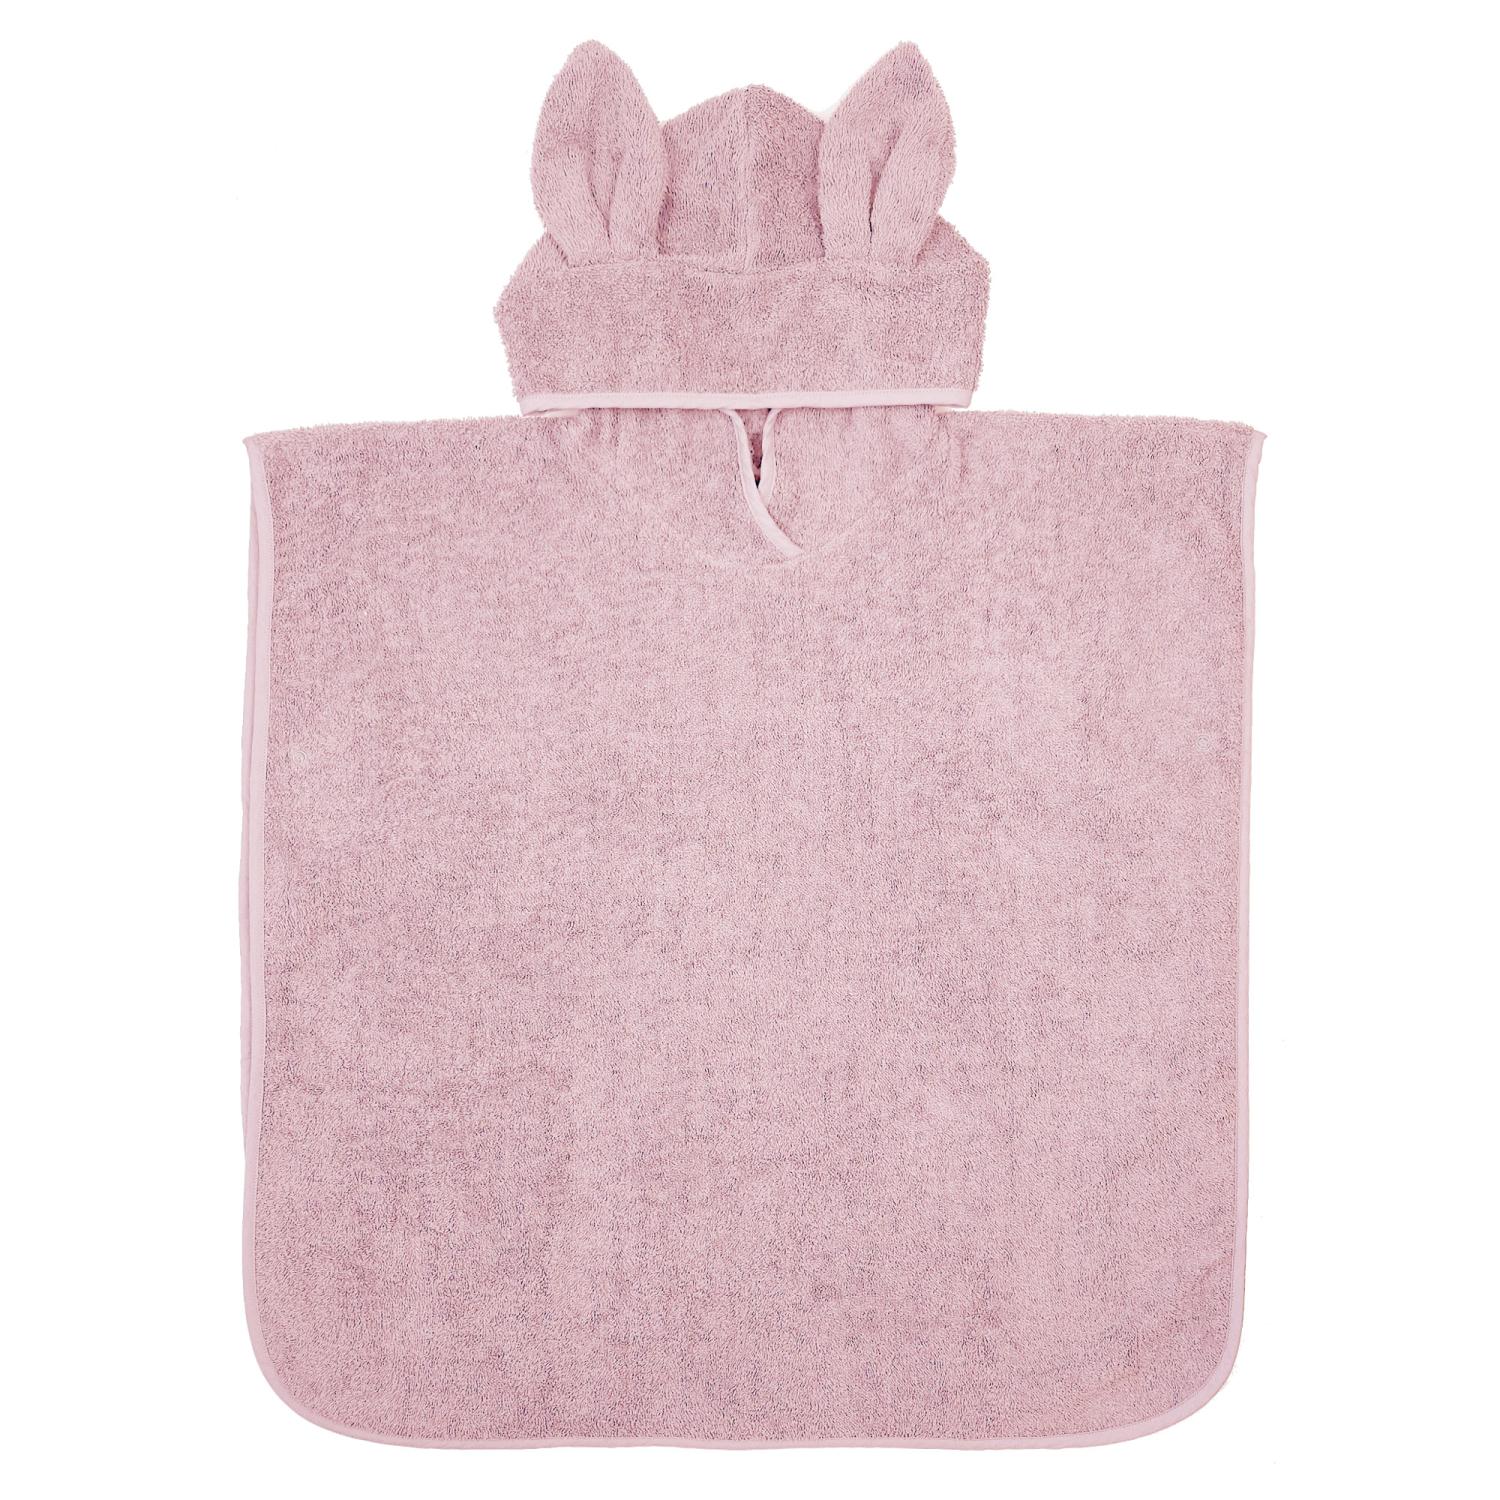 Bath poncho rabbit pink